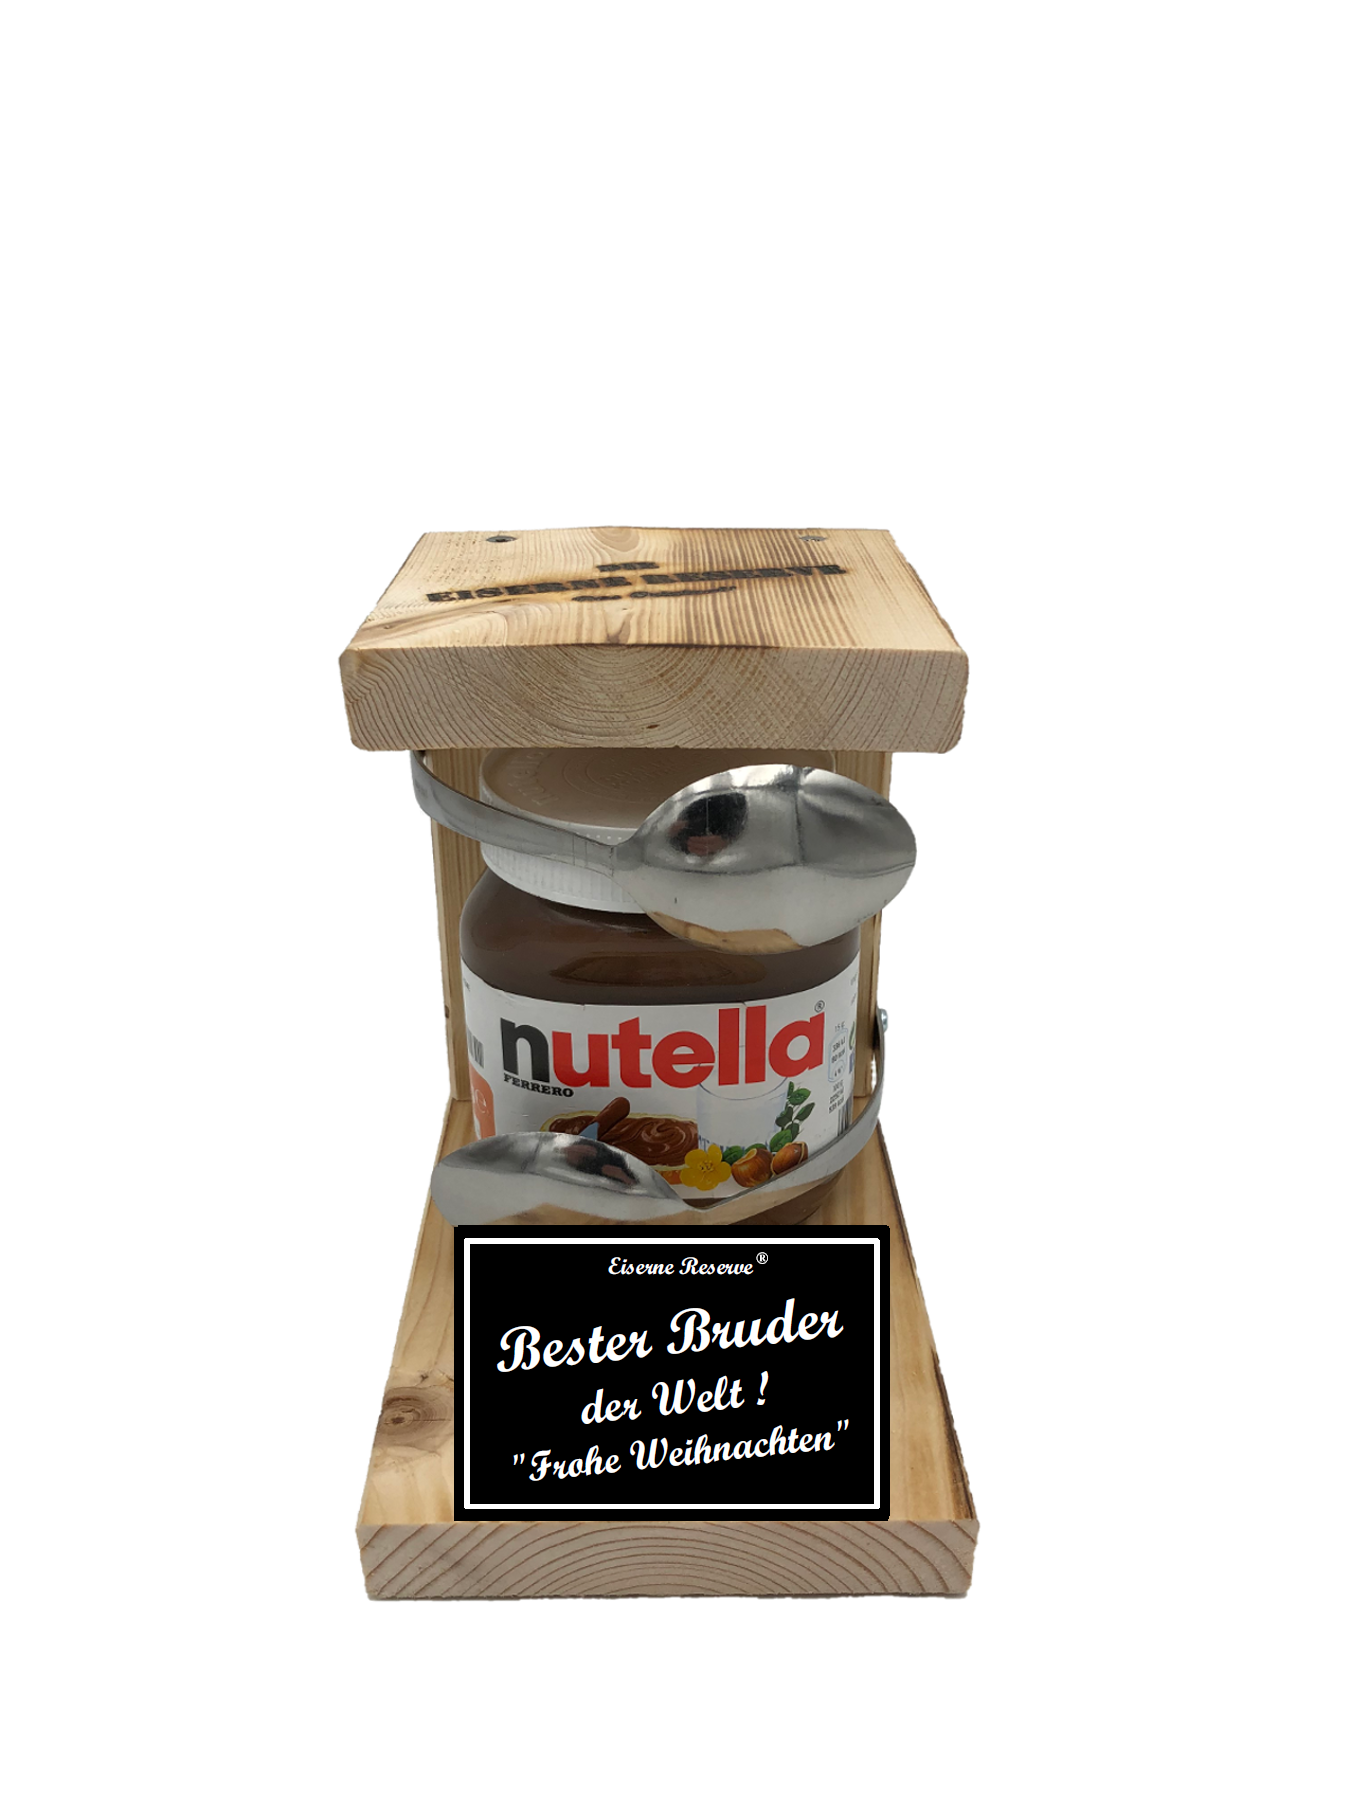 Bester Bruder der Welt Frohe Weihnachten Löffel Nutella Geschenk - Die Nutella Geschenkidee